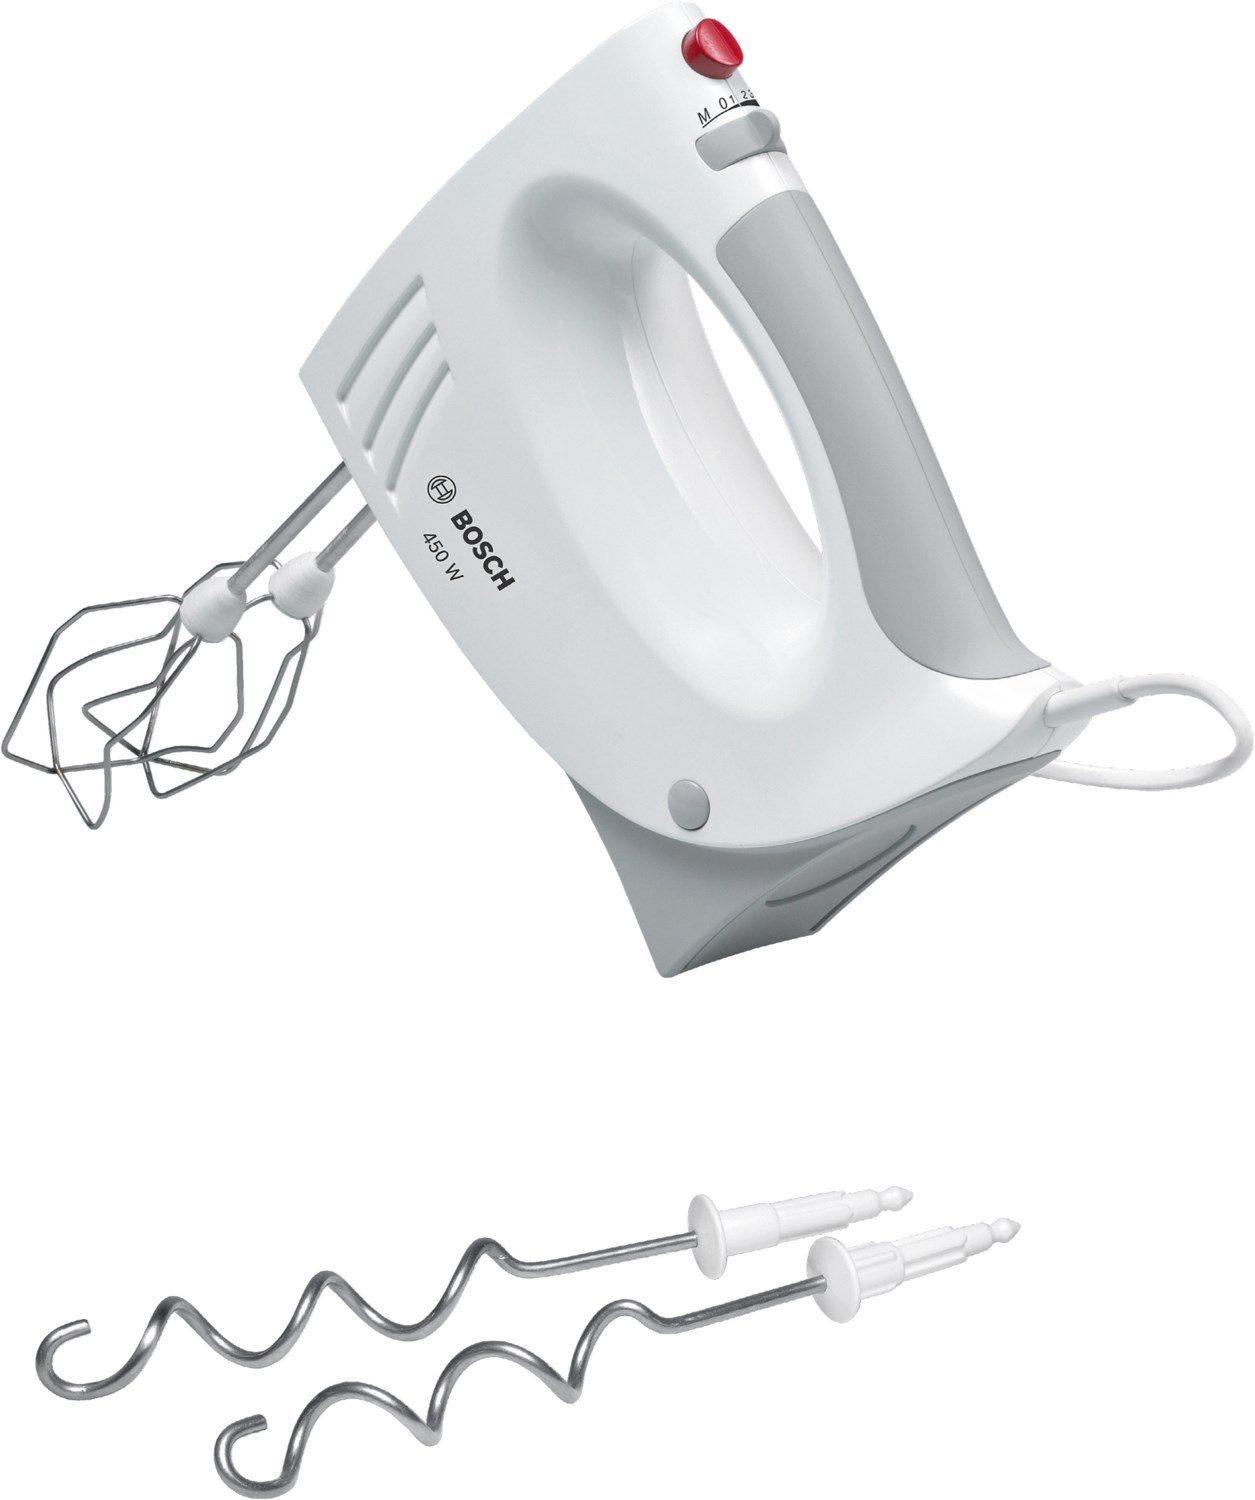 MFQ3530 Handrührgerät weiß/grau von Bosch